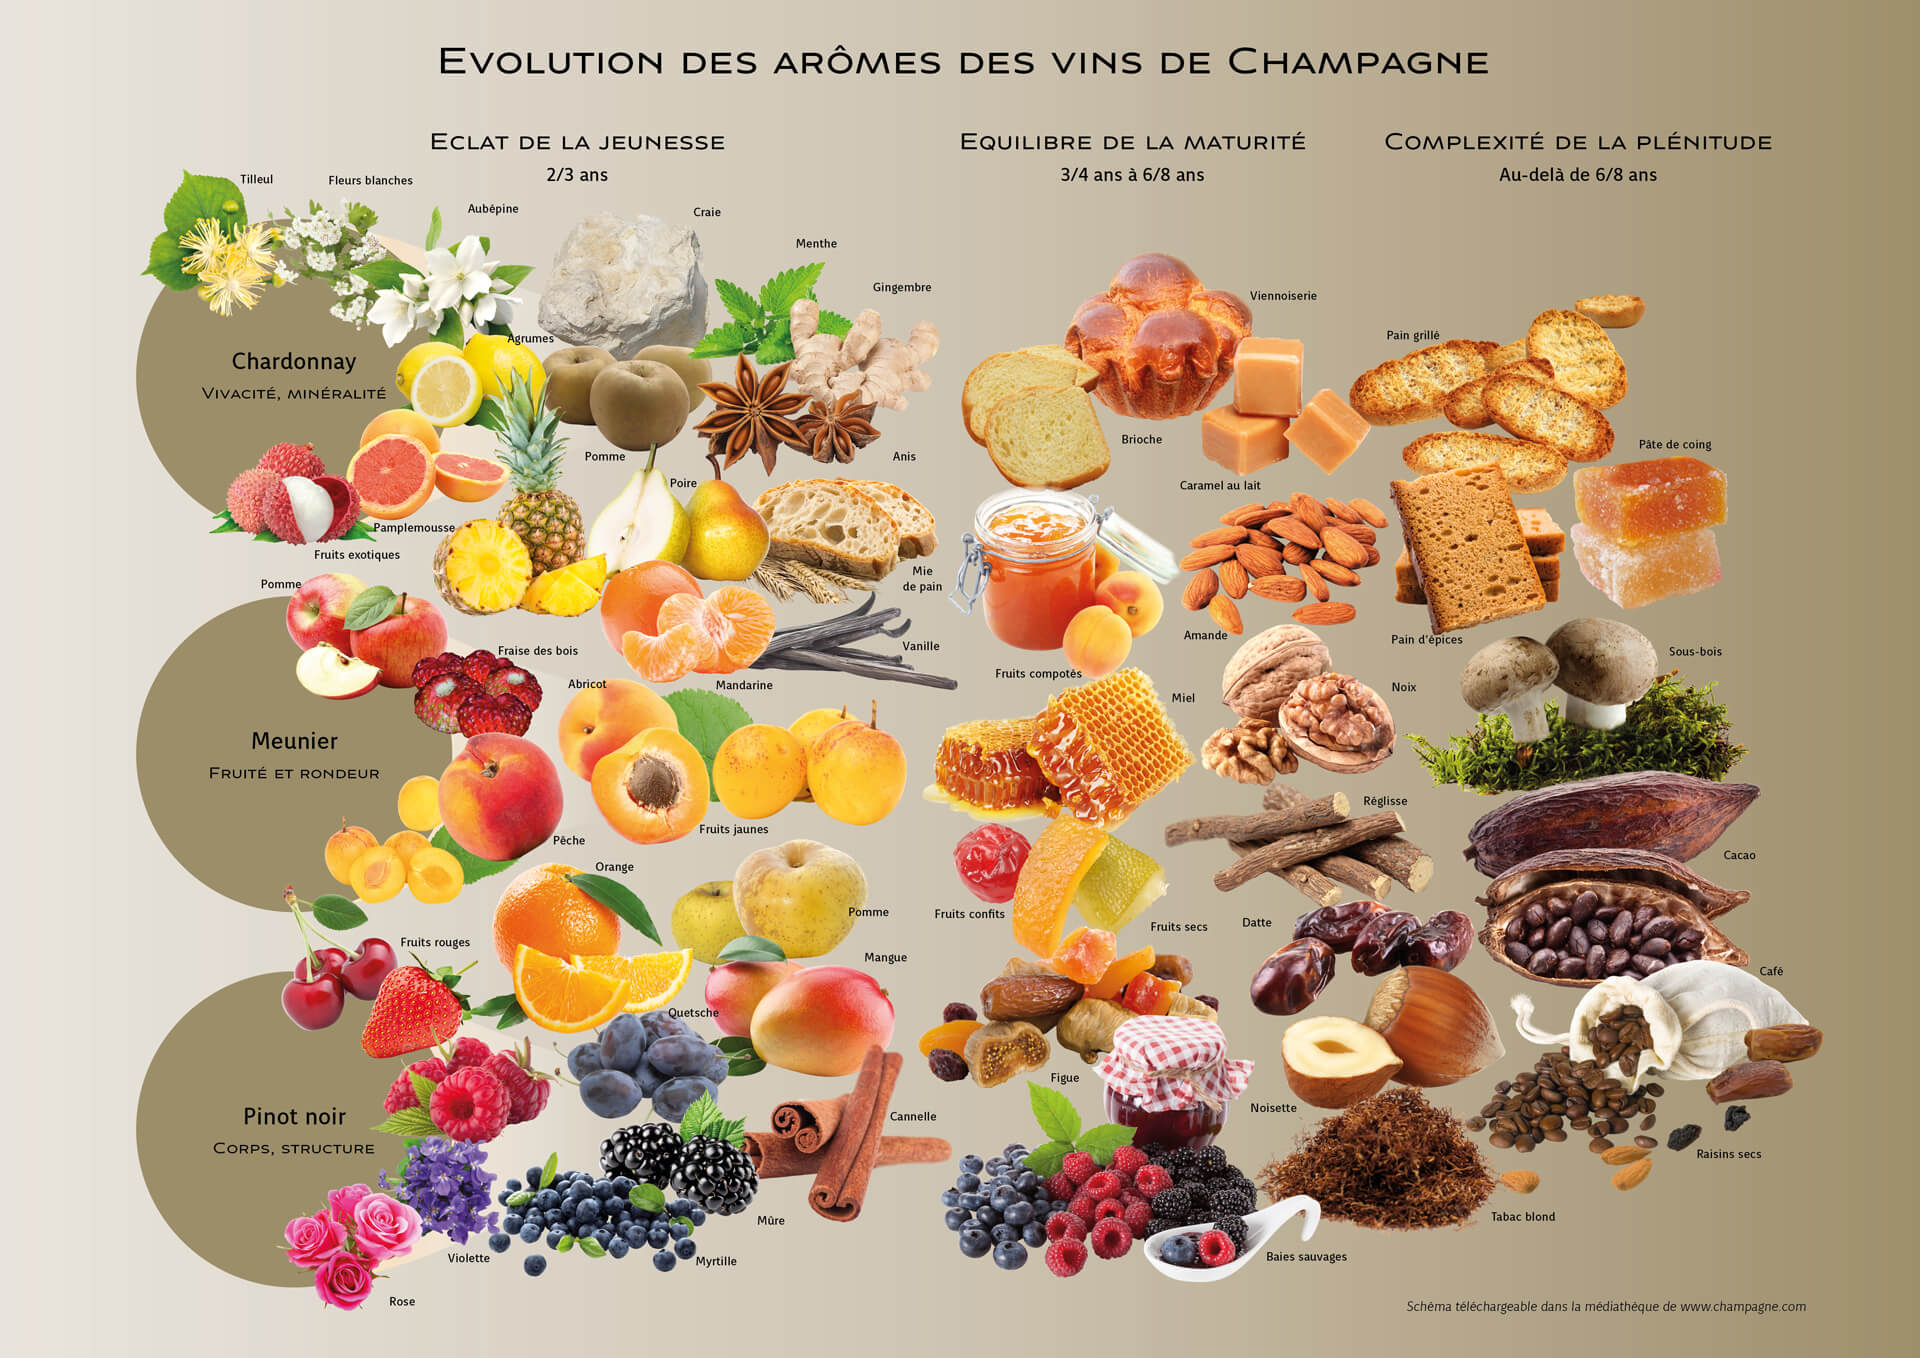 Evolution des arômes des vins de Champagne